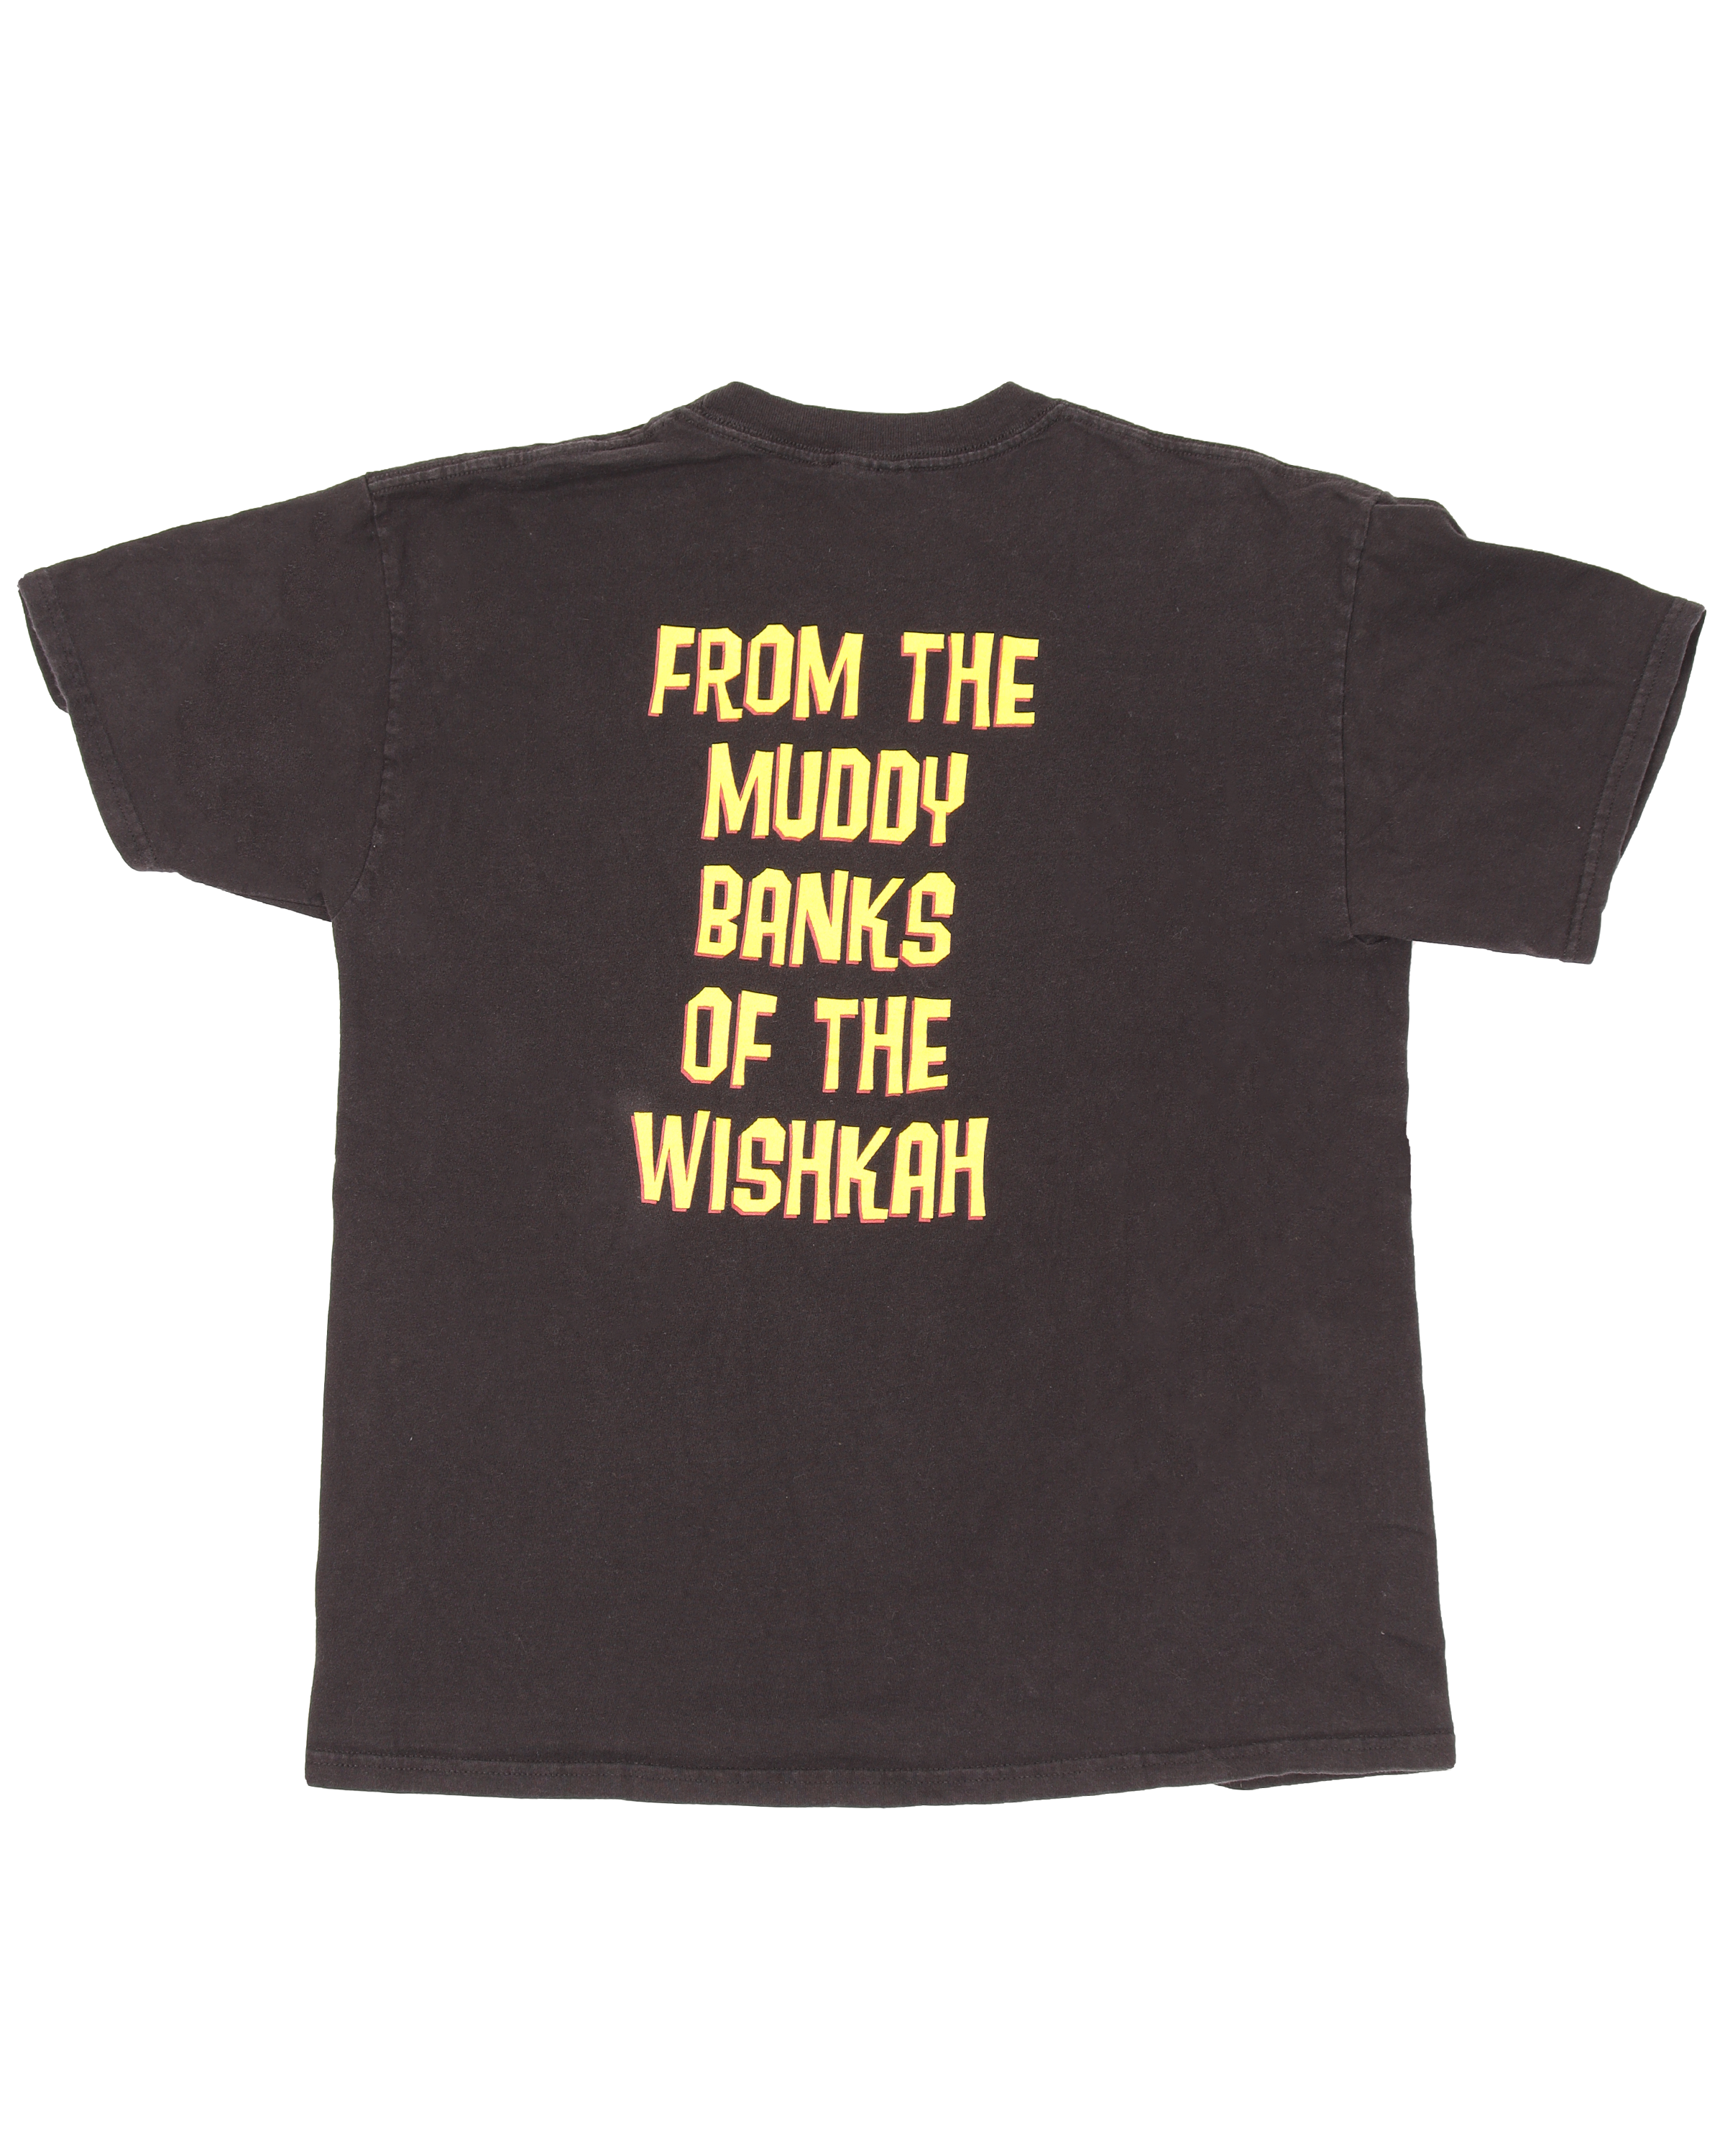 Nirvana Muddy Graphic Print T-Shirt